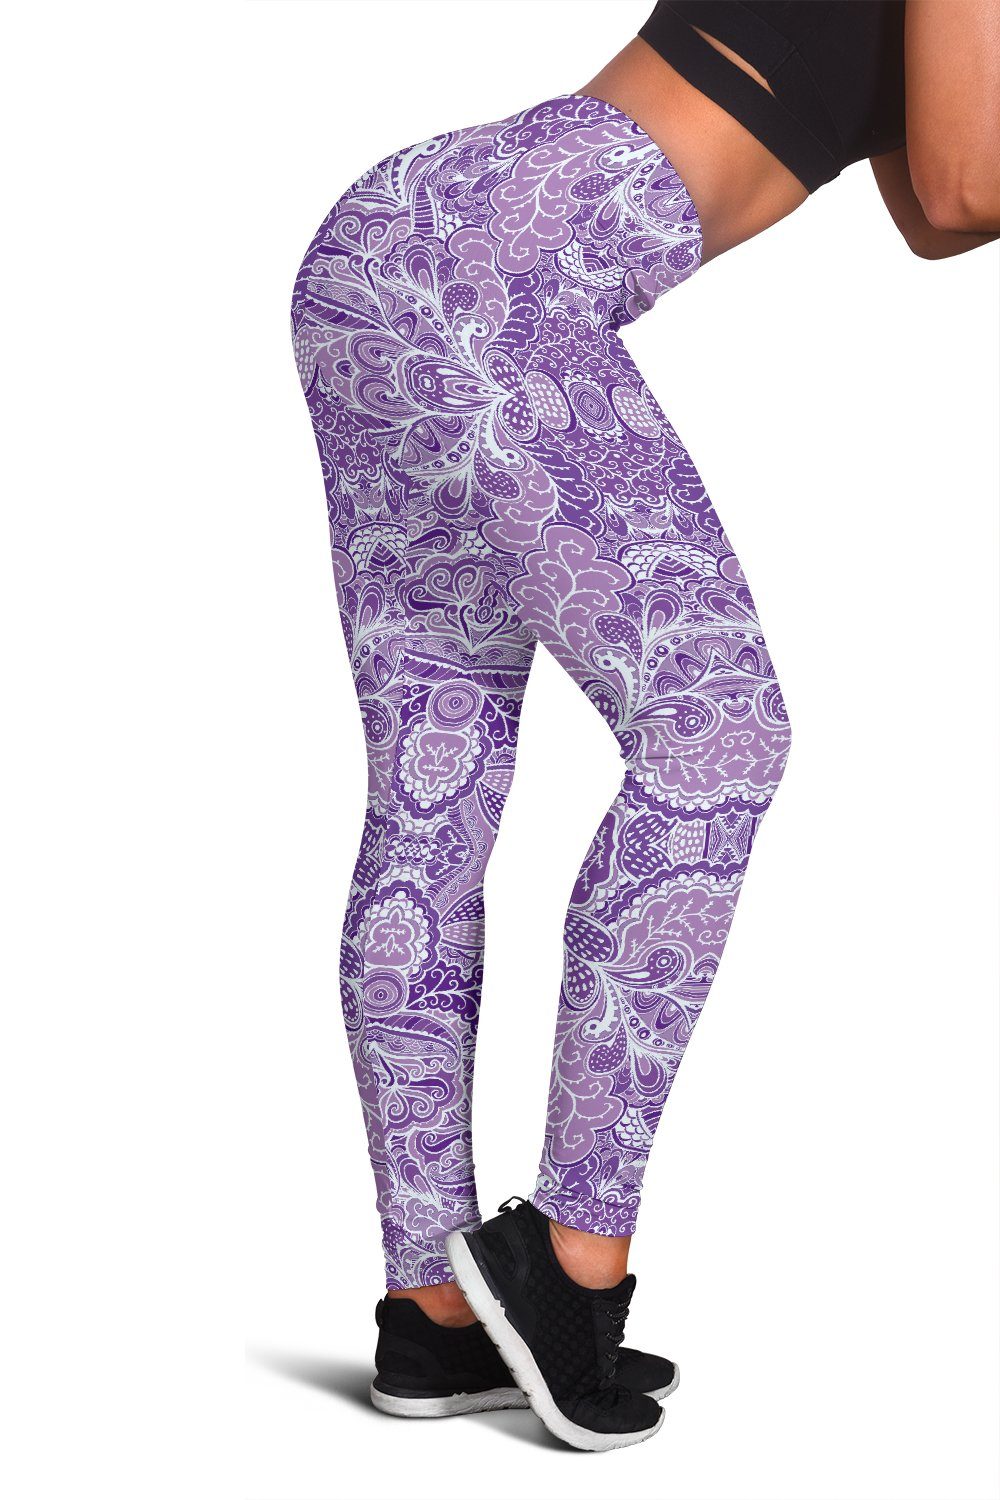 Calm In Purple Women S Leggings Your Amazing Design